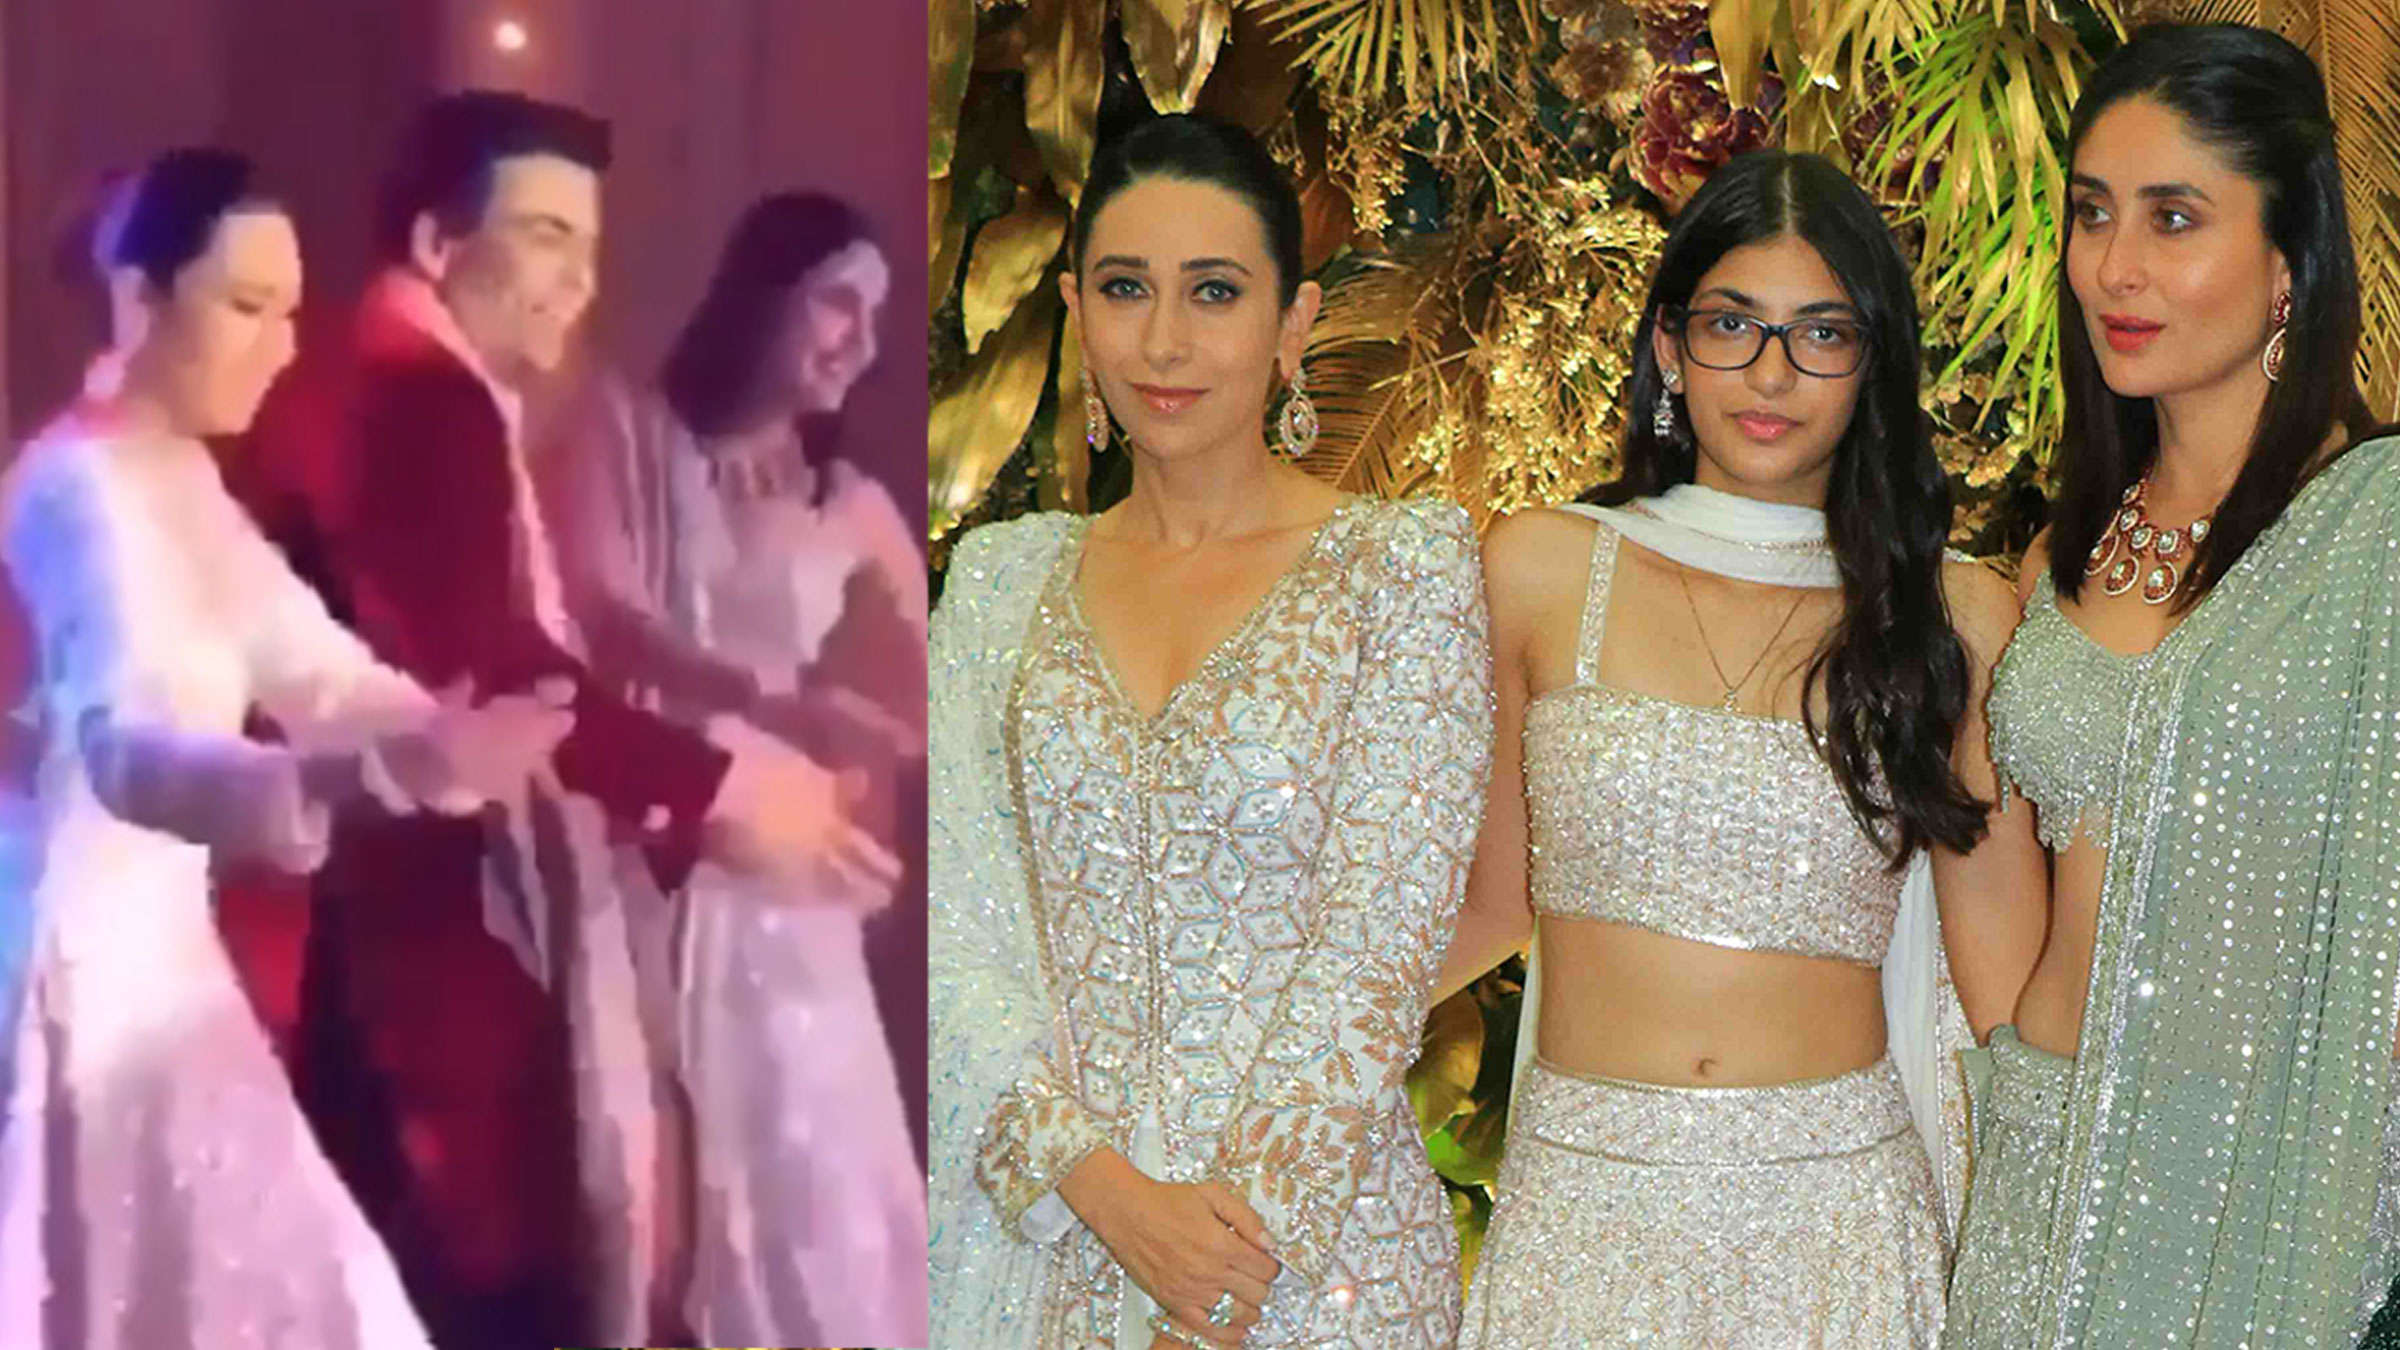 Watch: Sister Kareena And Karisma's Dance At Cousin Armaan Jain's Reception